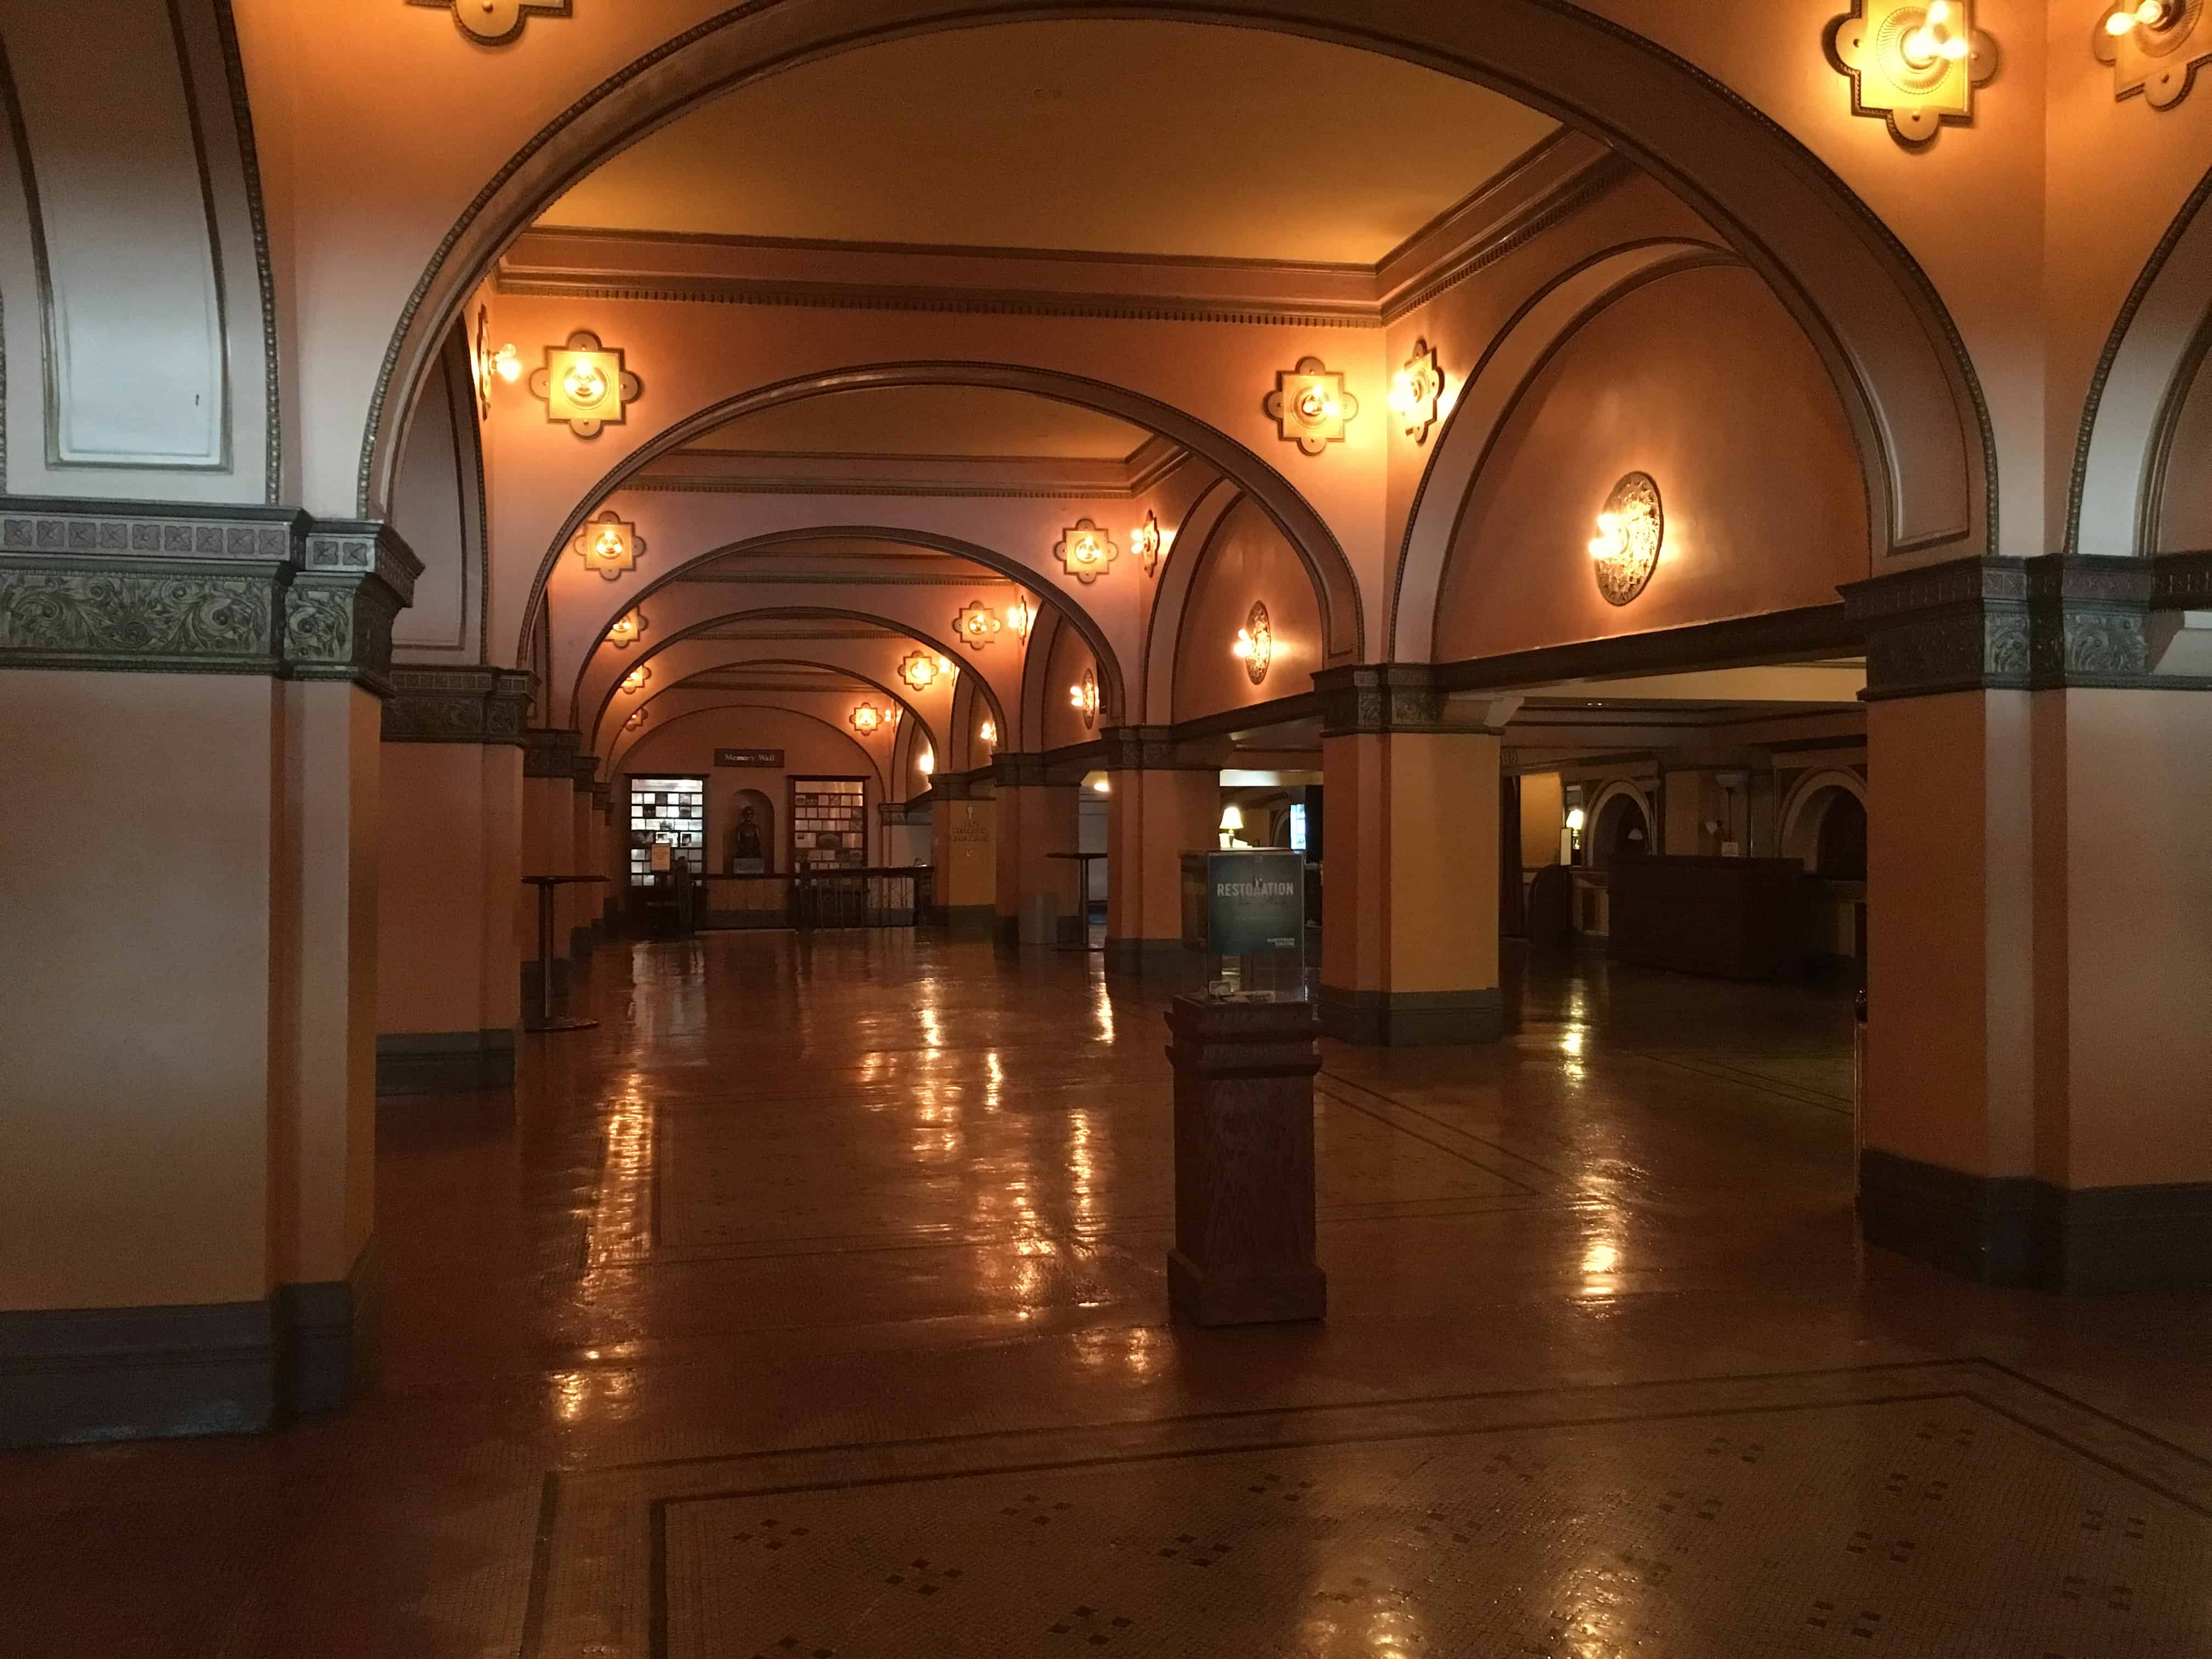 Main lobby in the Auditorium Theatre in Chicago, Illinois